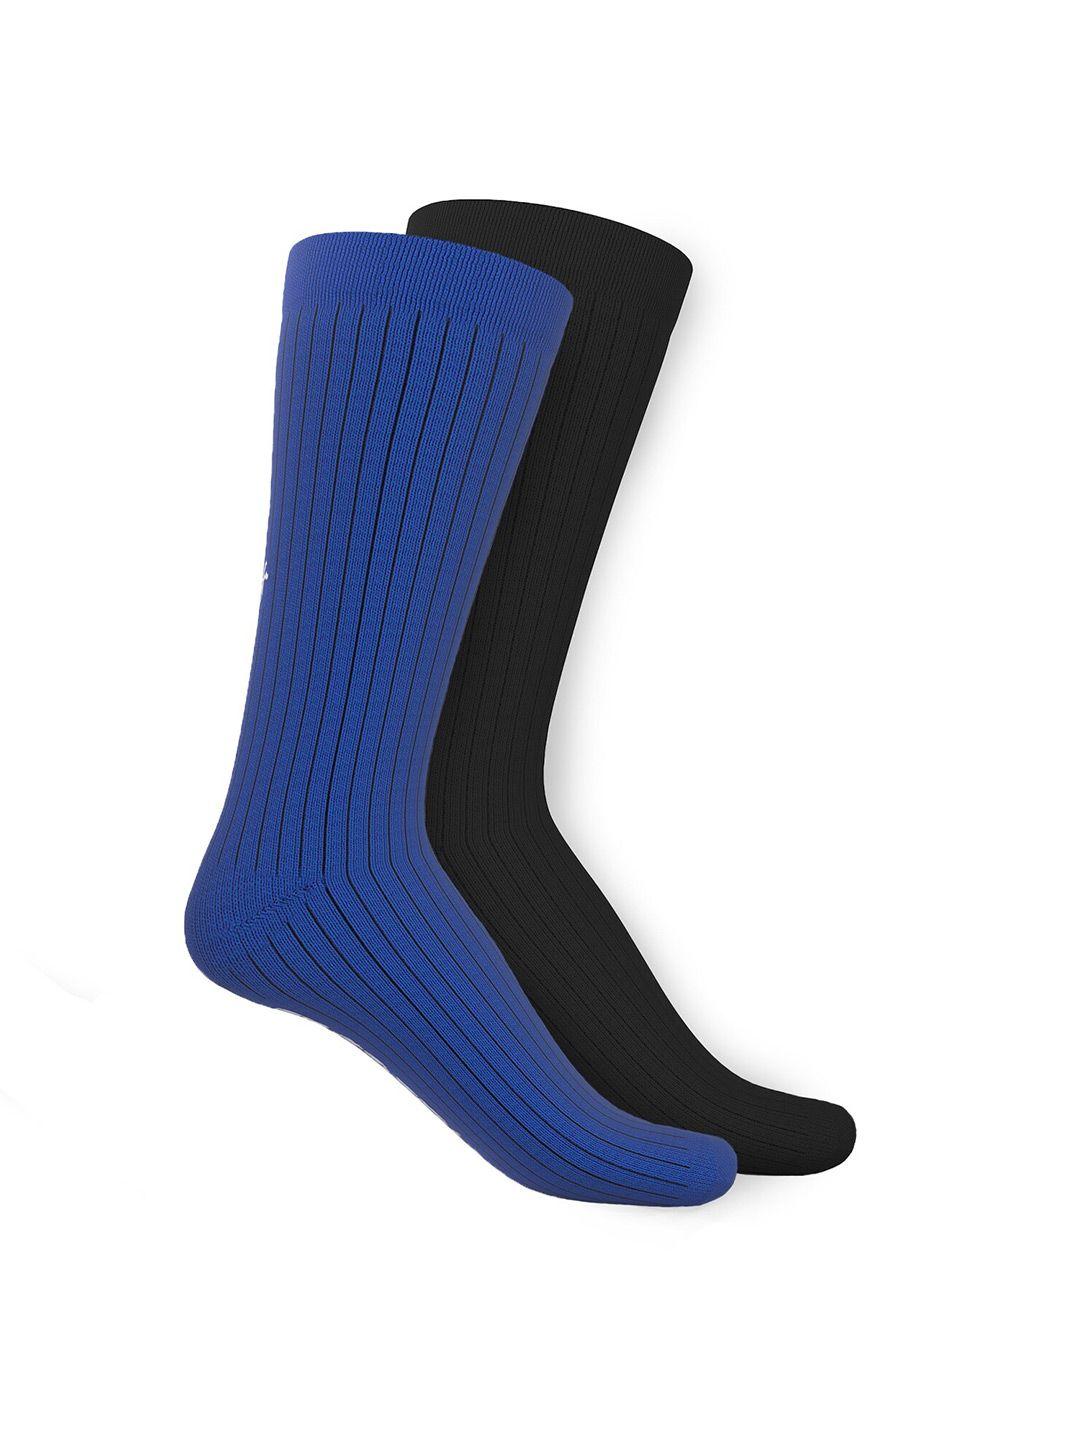 talkingsox-unisex-pack-of-2-striped-calf-length-socks